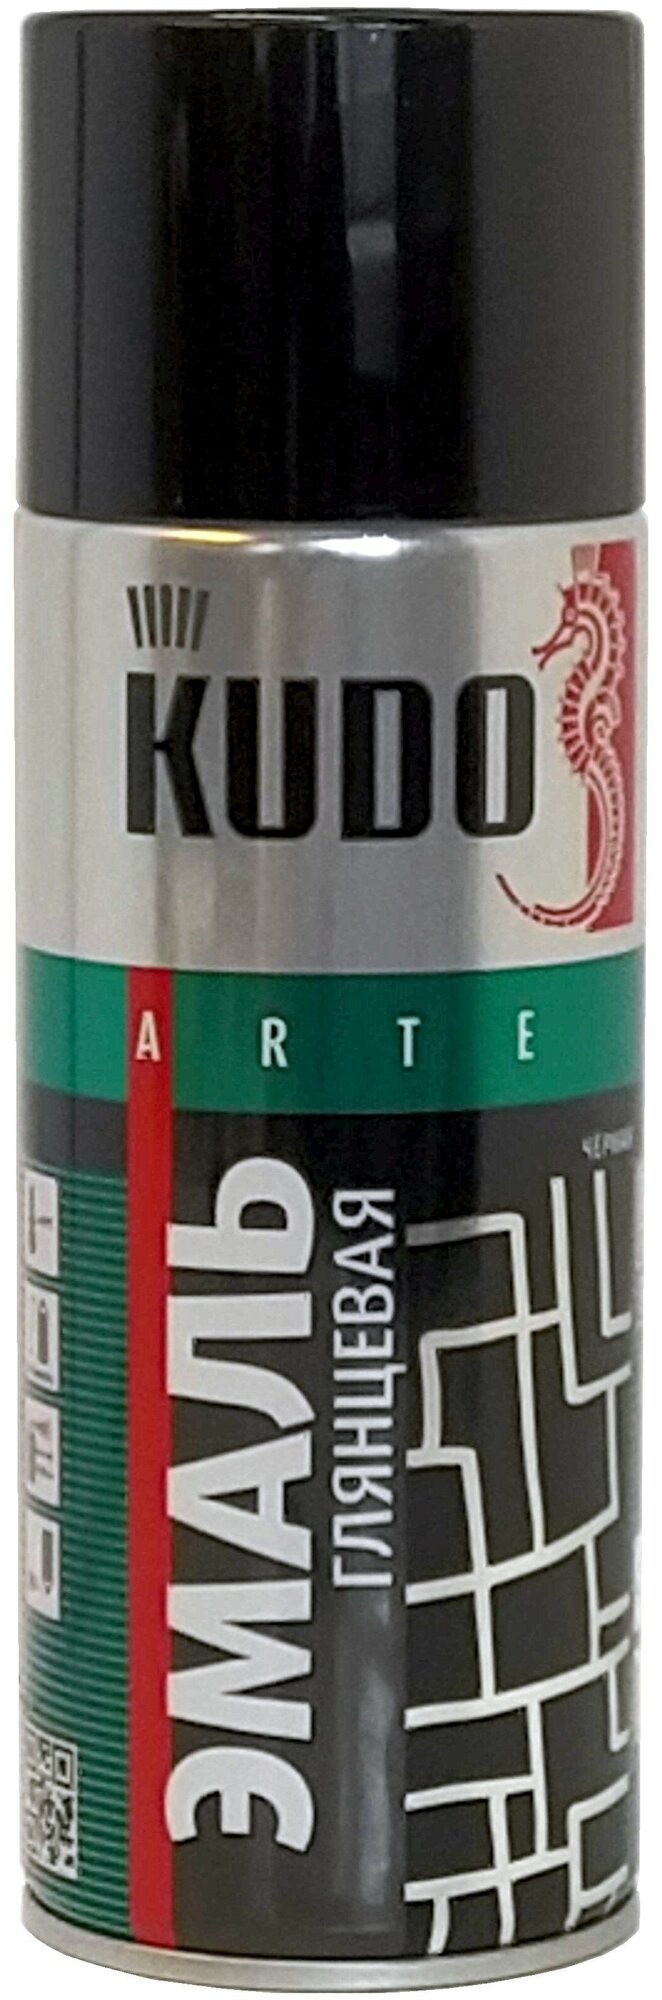 Эмаль KUDO универсальная 3P Technology, черный глянцевый RAL 9005, глянцевая, 520 мл, 1 шт.